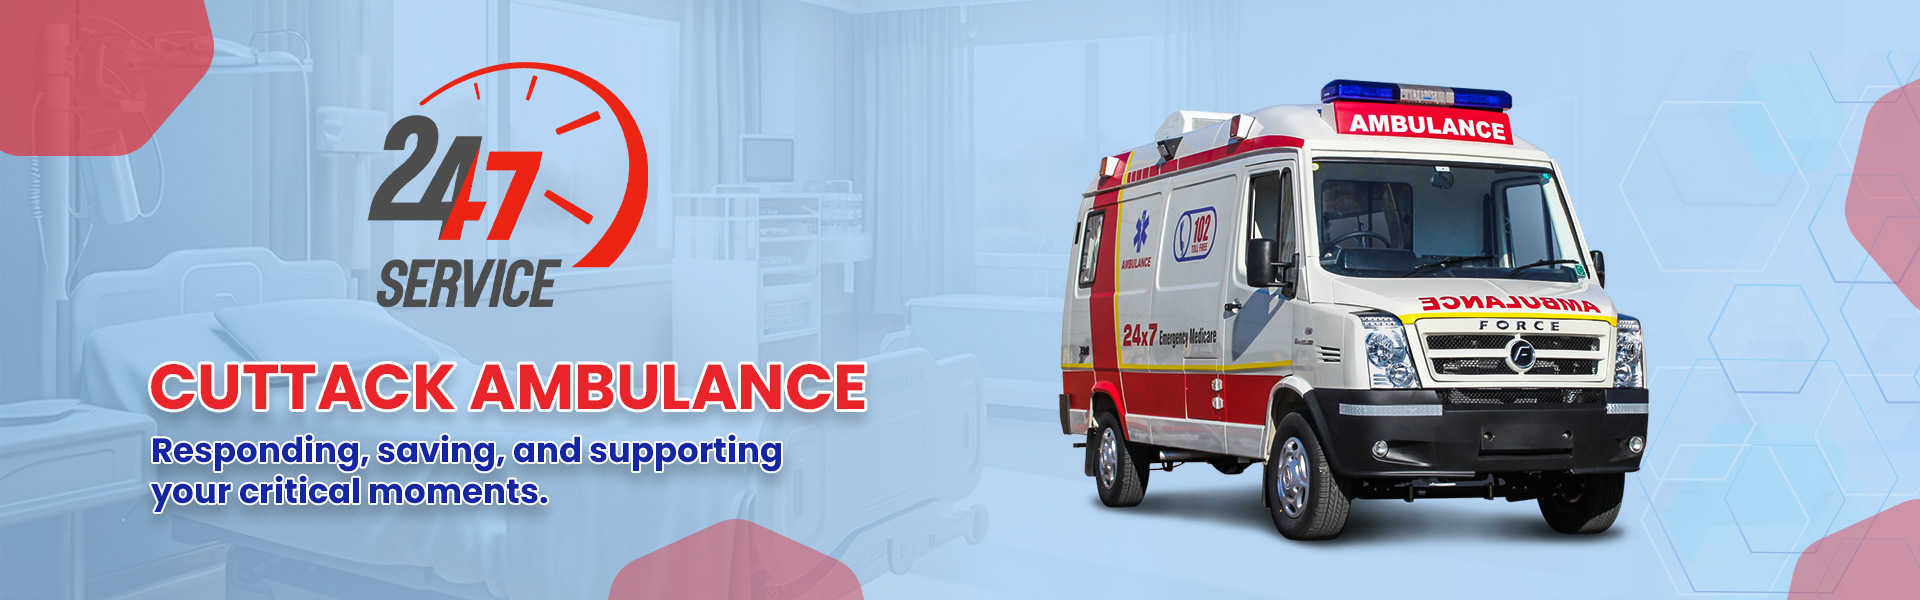 ctc-ambulance2